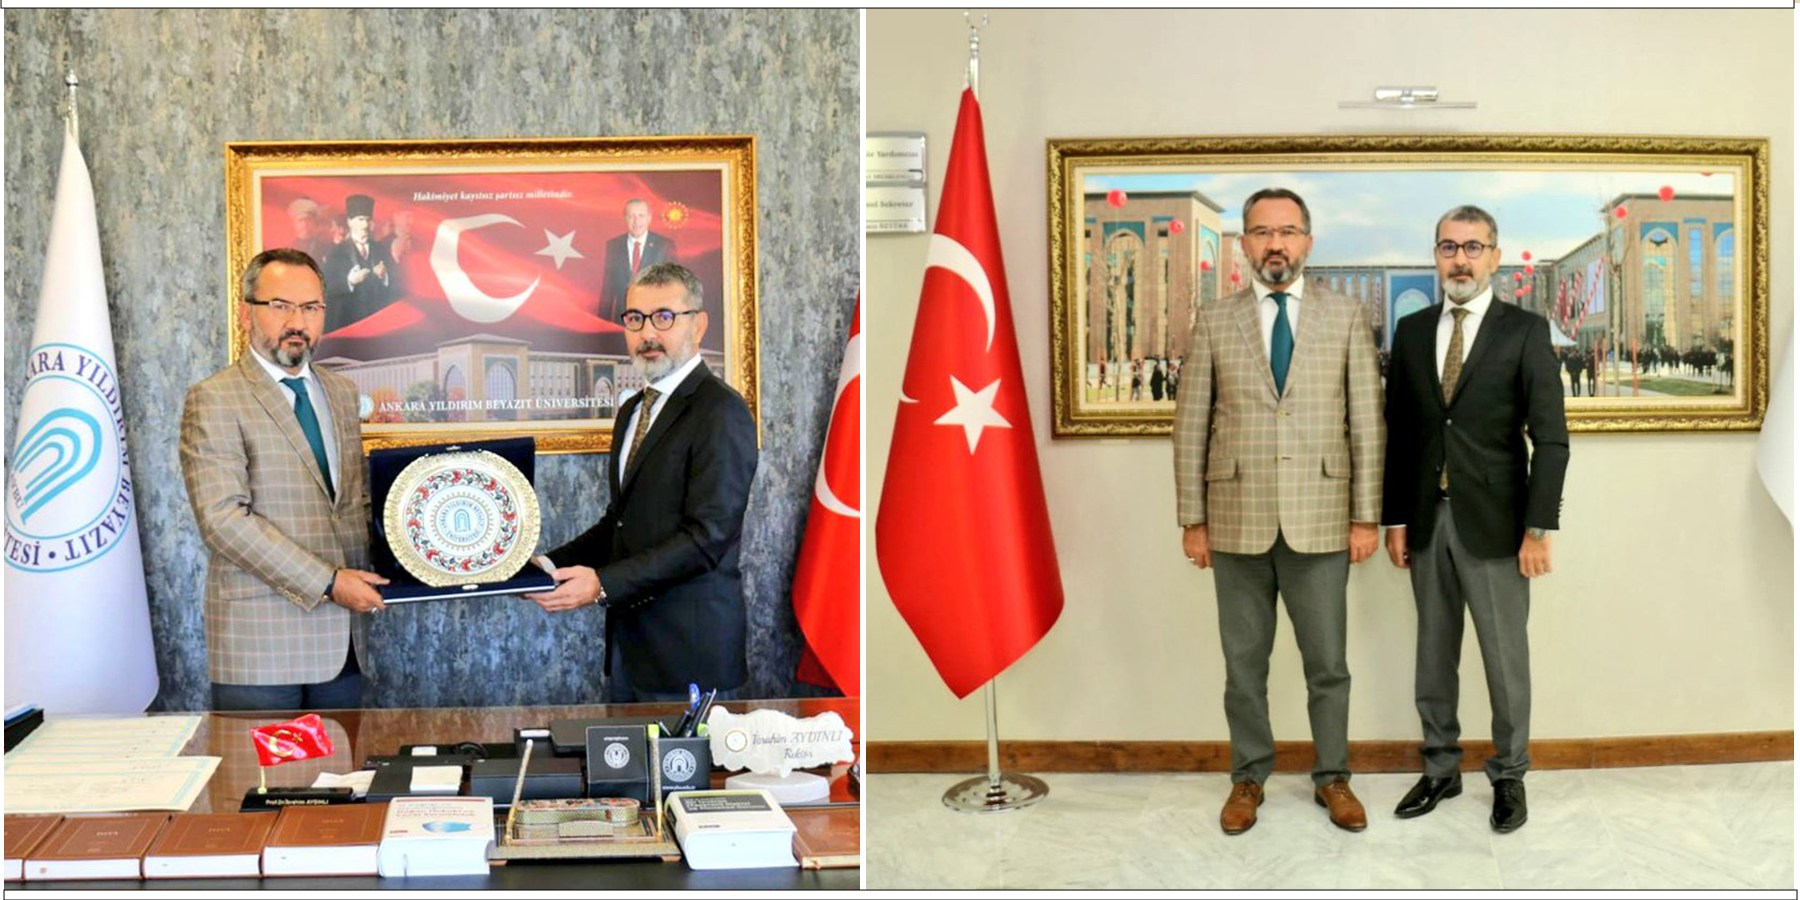 TİHEK Başkanı Prof. Dr. Muharrem Kılıç'tan AYBÜ Rektörü Prof. Dr. İbrahim Aydınlı'ya Ziyaret